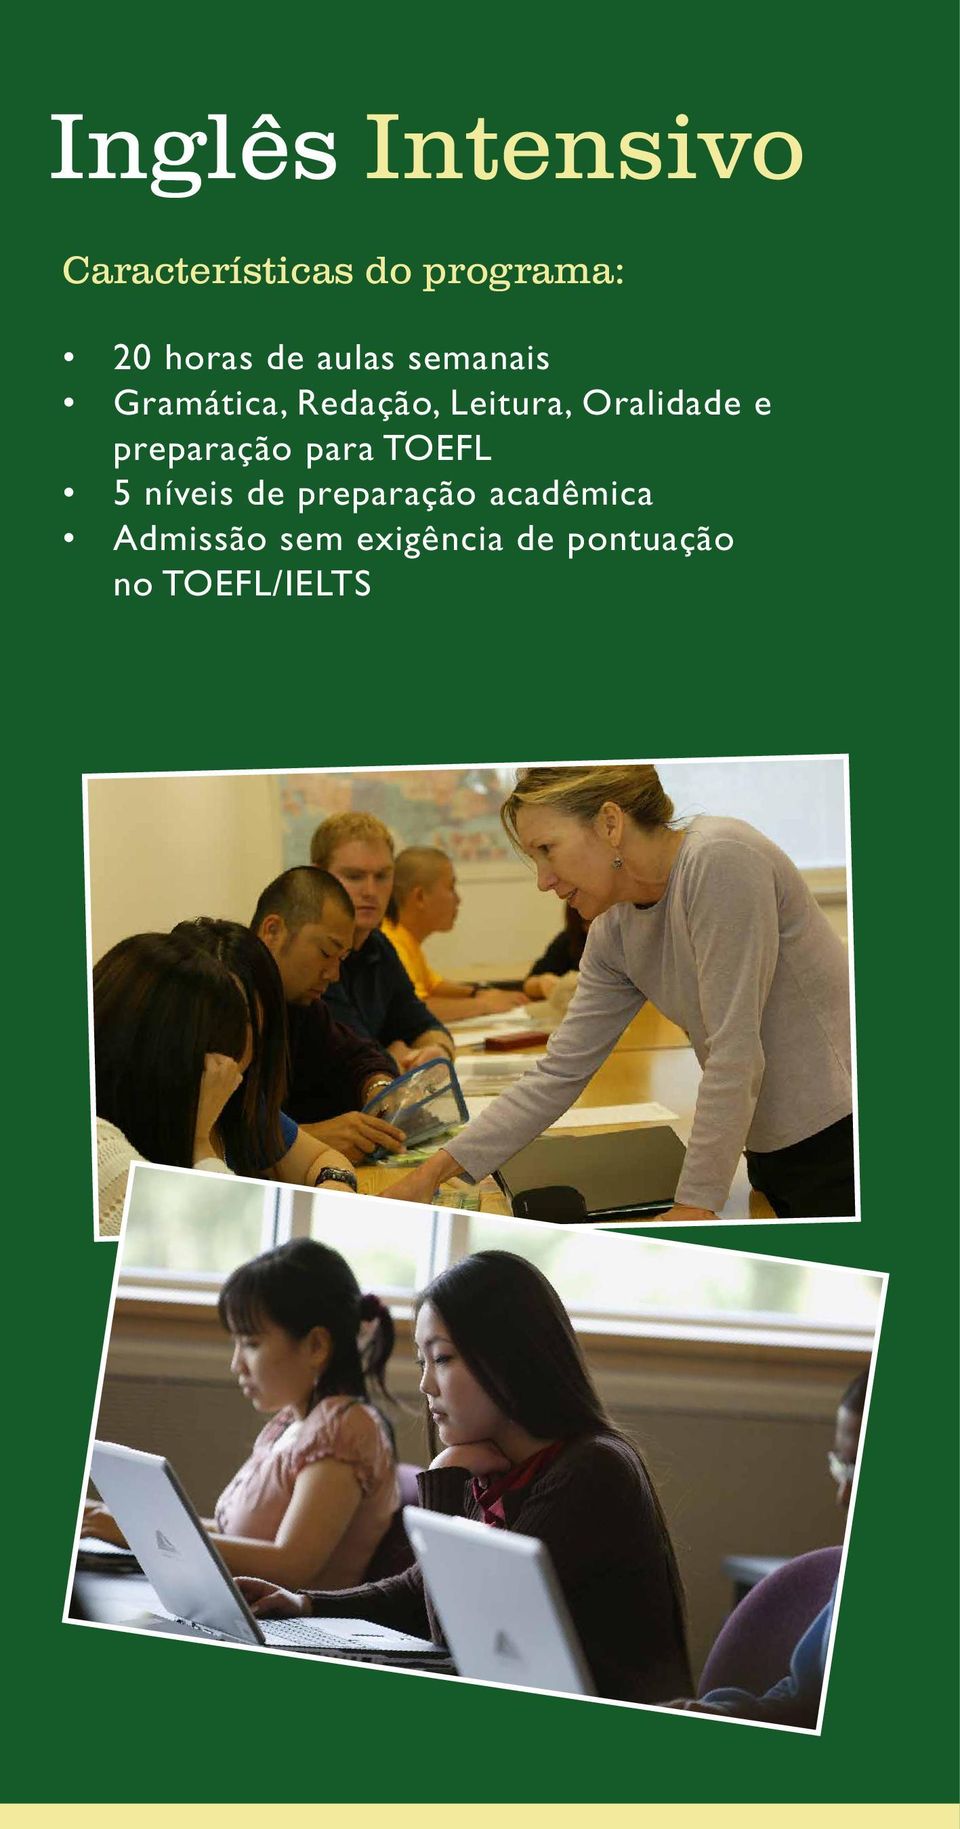 Oralidade e preparação para TOEFL 5 níveis de